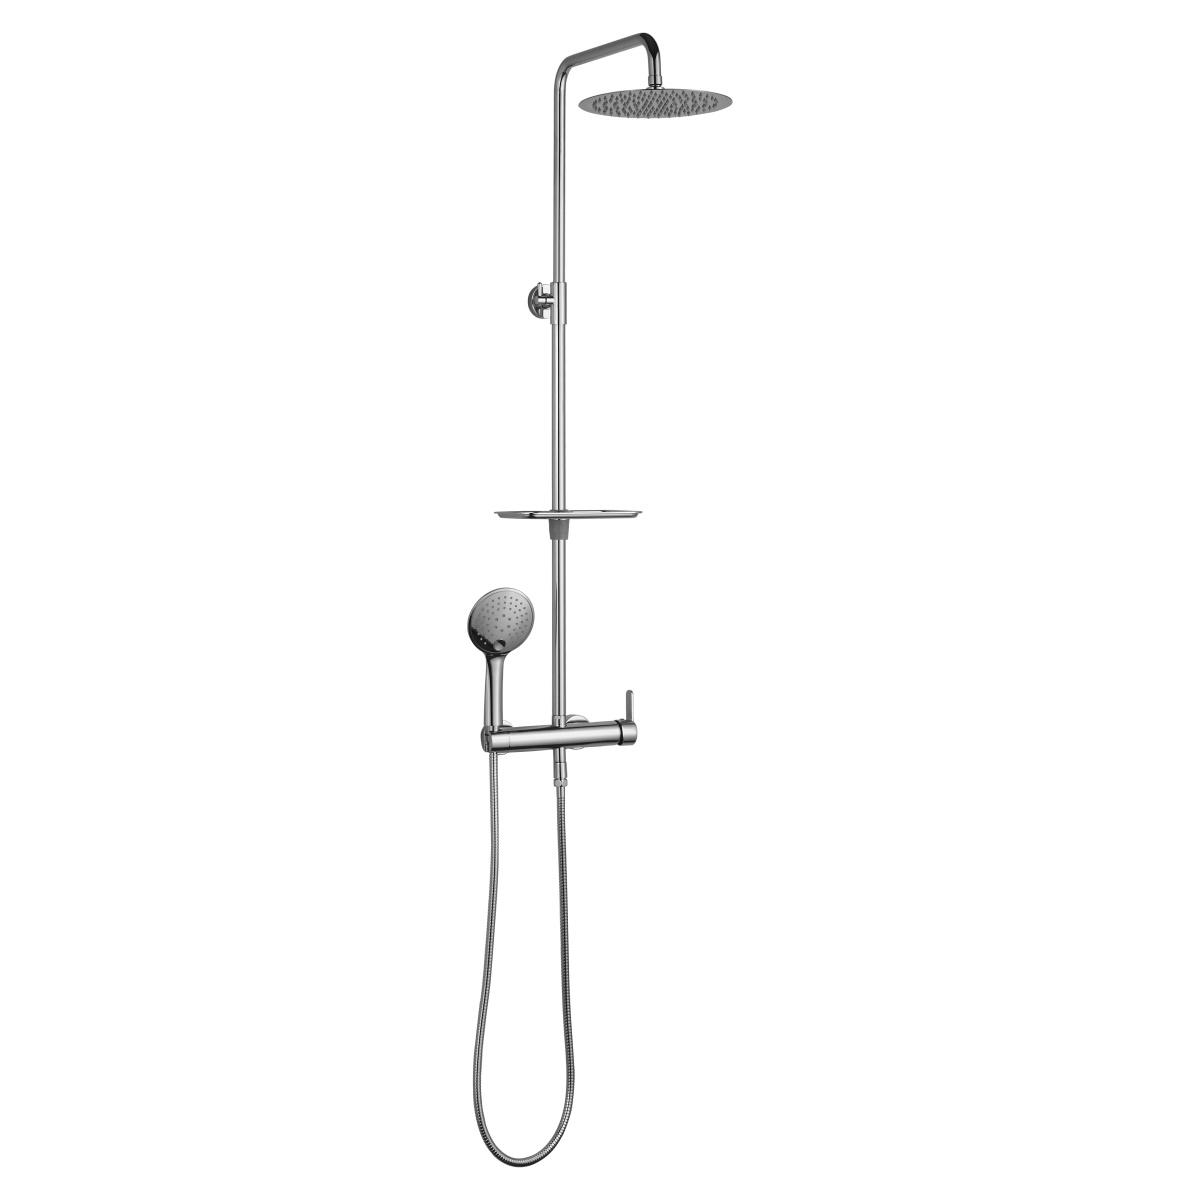 YS34151 Cột sen tắm, cột tắm mưa có vòi kệ, có thể điều chỉnh độ cao;